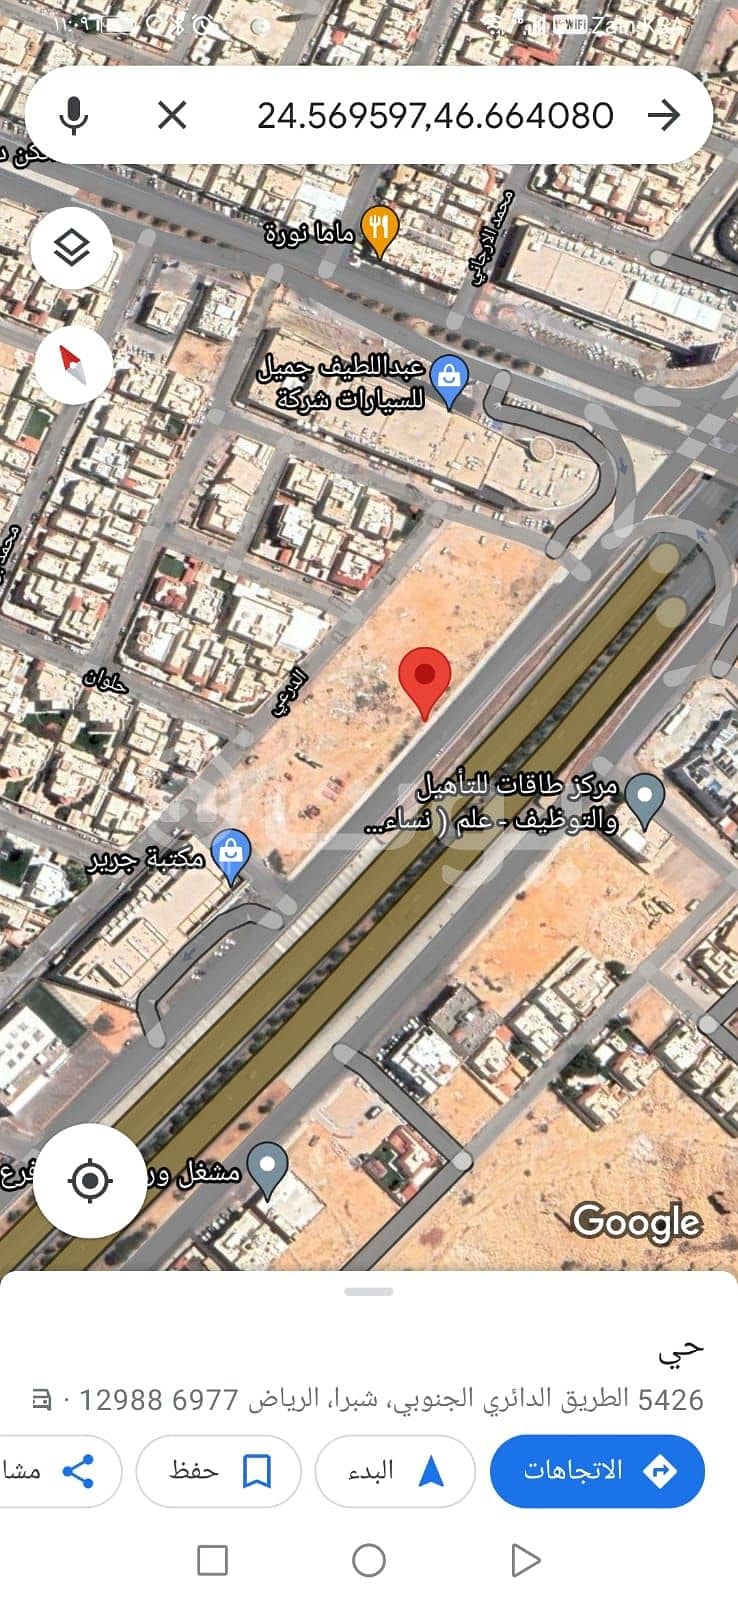 Commercial land for sale by bidding in Al Suwaidi, West of Riyadh